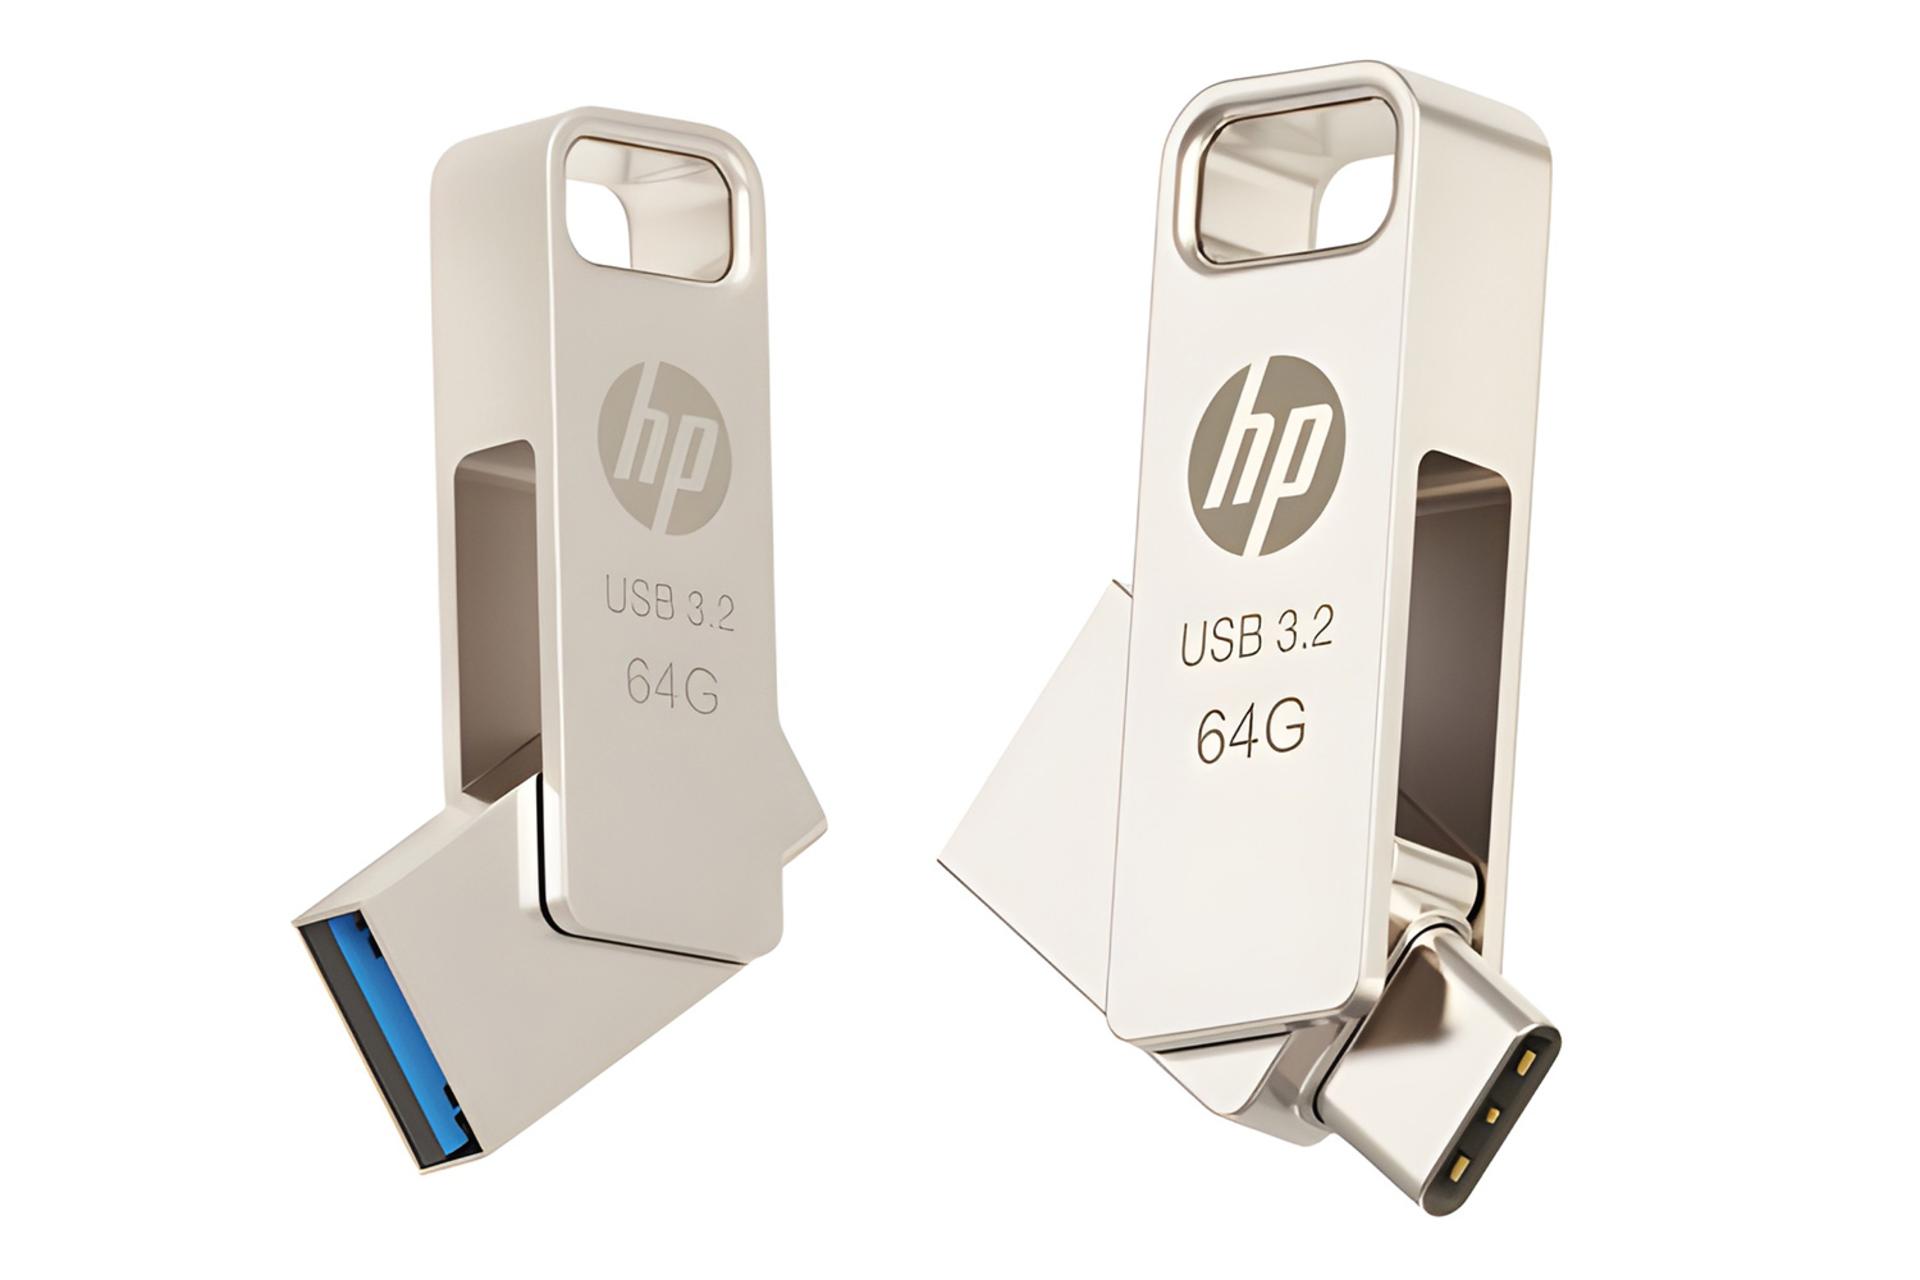 نمای کناری فلش مموری اچ پی HP x206c 64GB USB 3.2